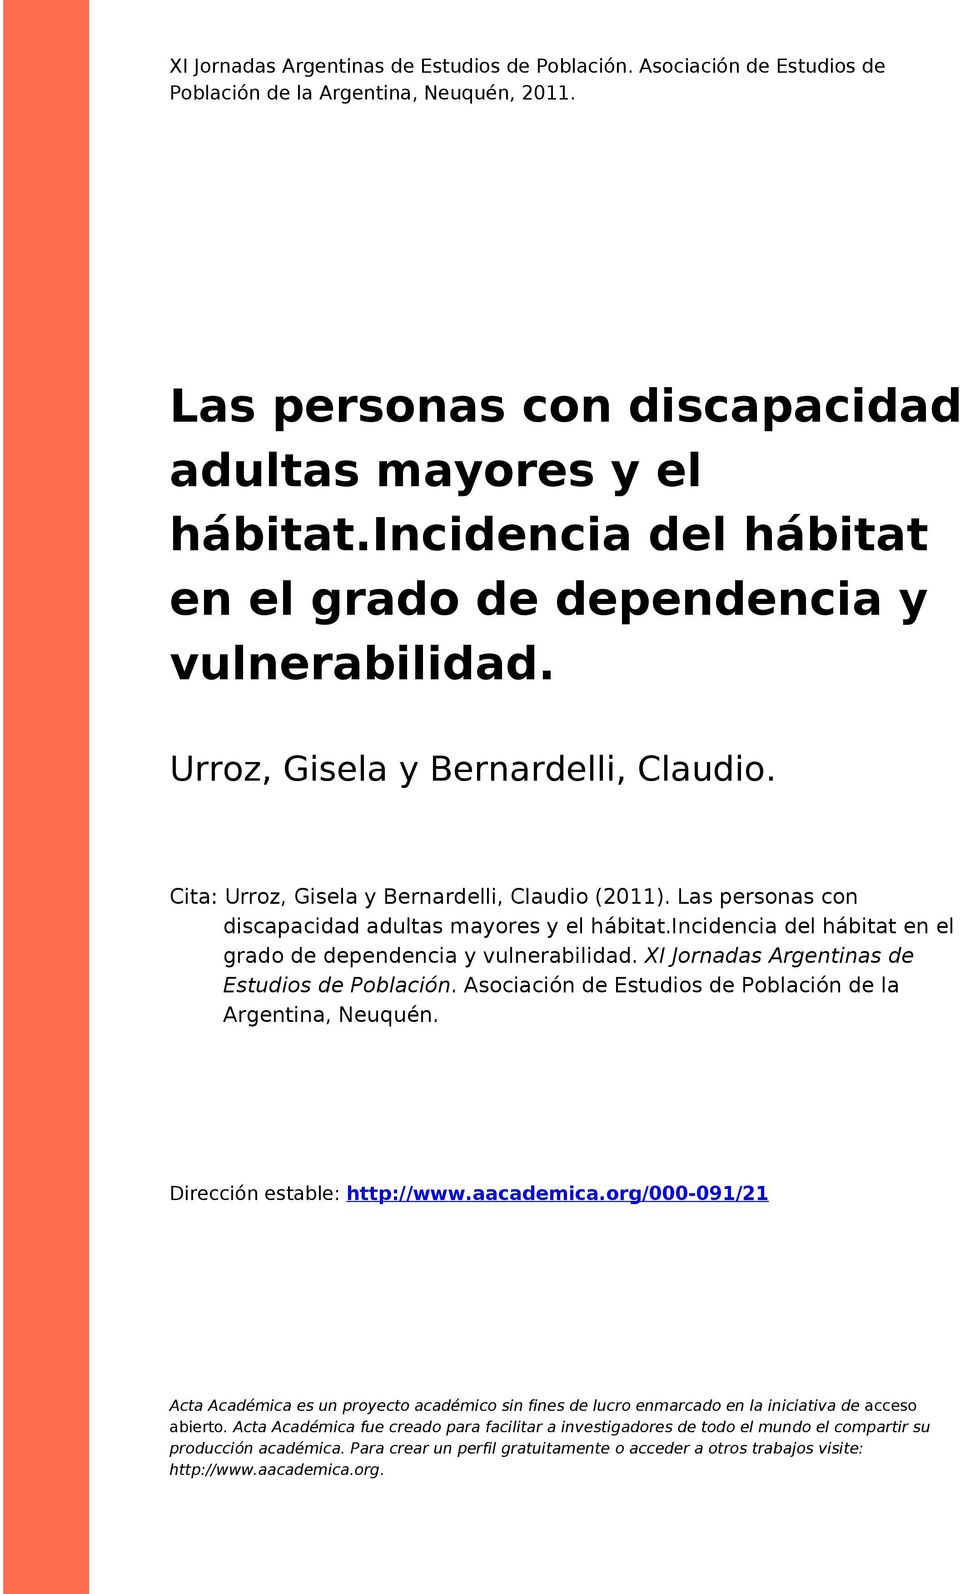 Las personas con discapacidad adultas mayores y el hábitat.incidencia del hábitat en el grado de dependencia y vulnerabilidad. XI Jornadas Argentinas de Estudios de Población.